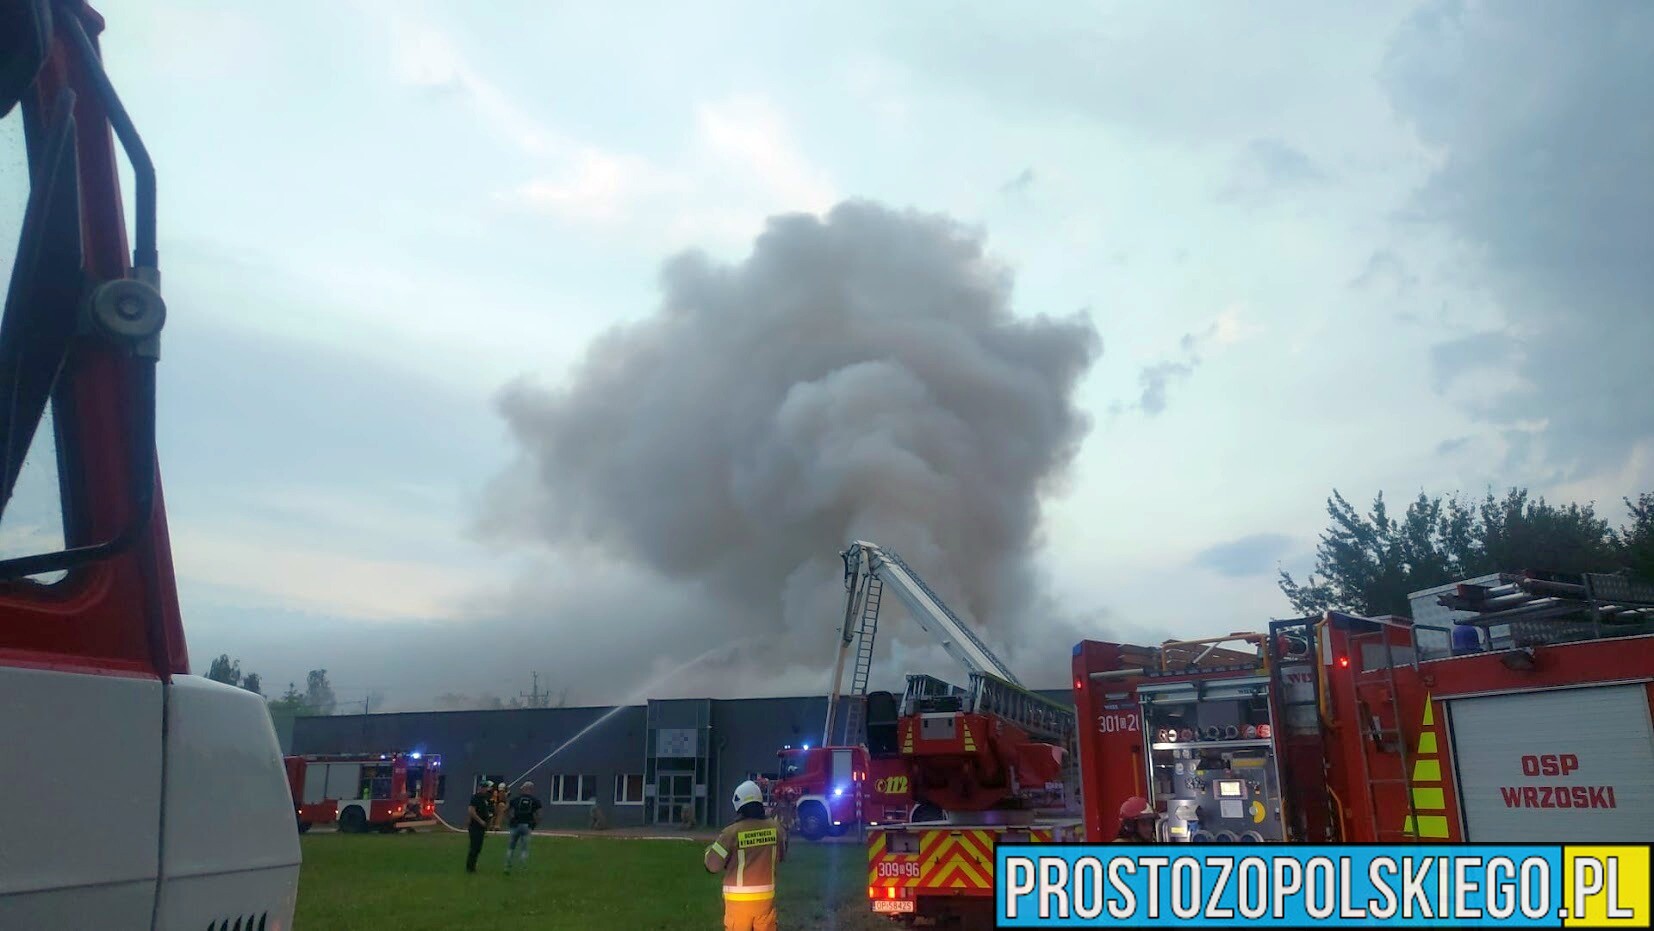 Pożar magazynu pod Opolem, pożar w Opolu, duży pożar pod Opolem, duży pożar w Opolu, palą sie magazyny,